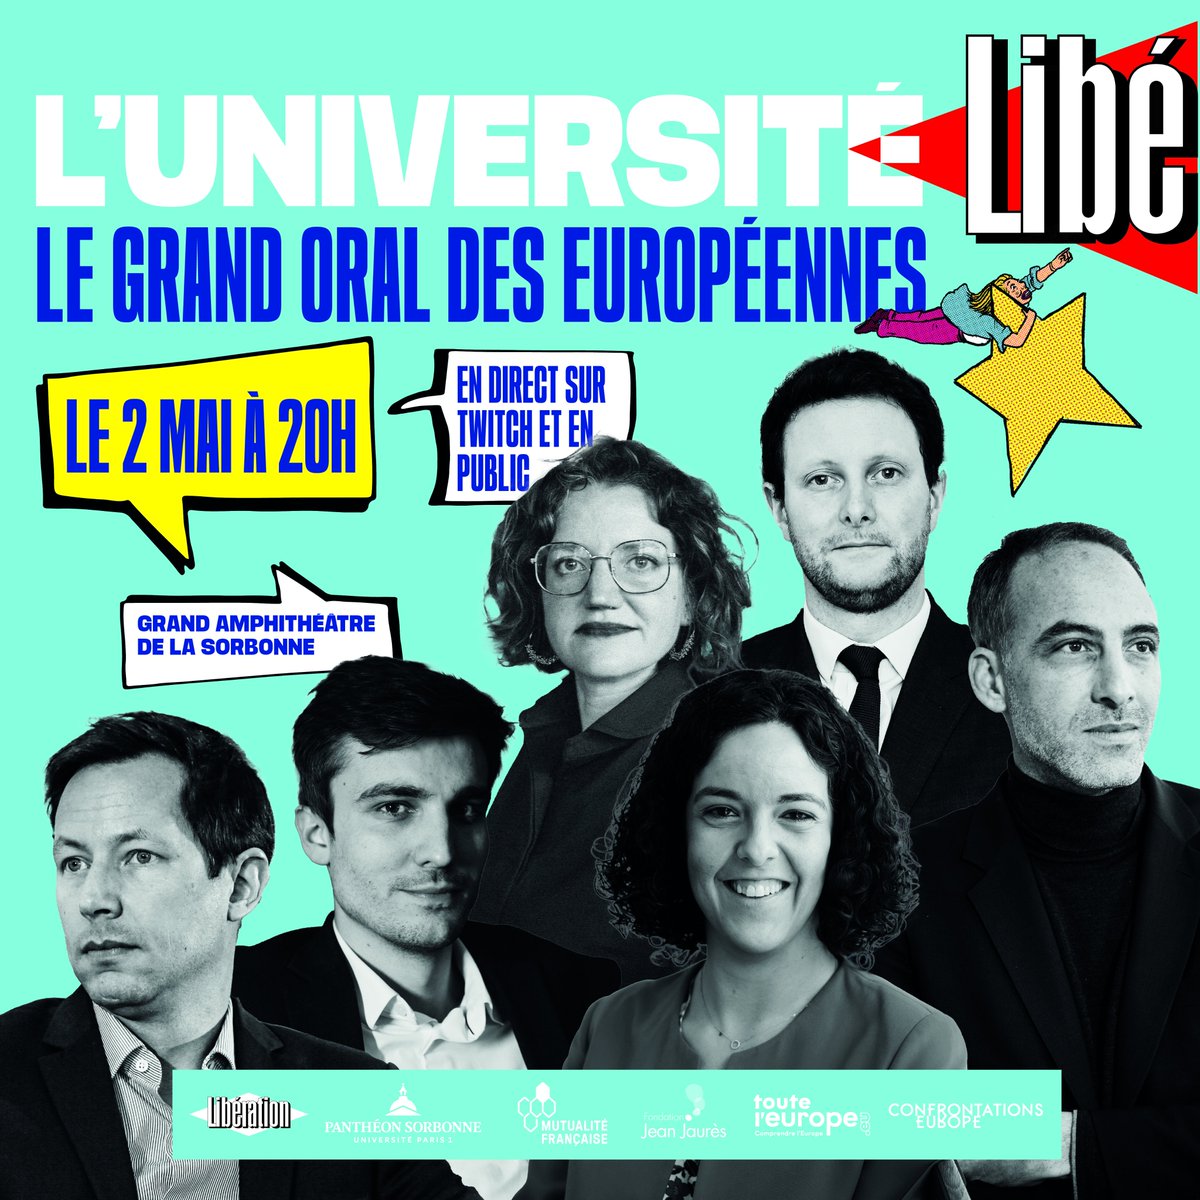 N'oubliez pas ! Rendez-vous à 20h pour suivre le Grand Oral des Européennes de l'Université @libe à la @SorbonneParis1 ou sur @Backseat_fr 🗣️avec @ManonAubryFr, @CBeaune, @fxbellamy, @L_Deffontaines, @rglucks1 et @marietouss1 #UniversitéLibé, en partenariat avec la Mutualité…